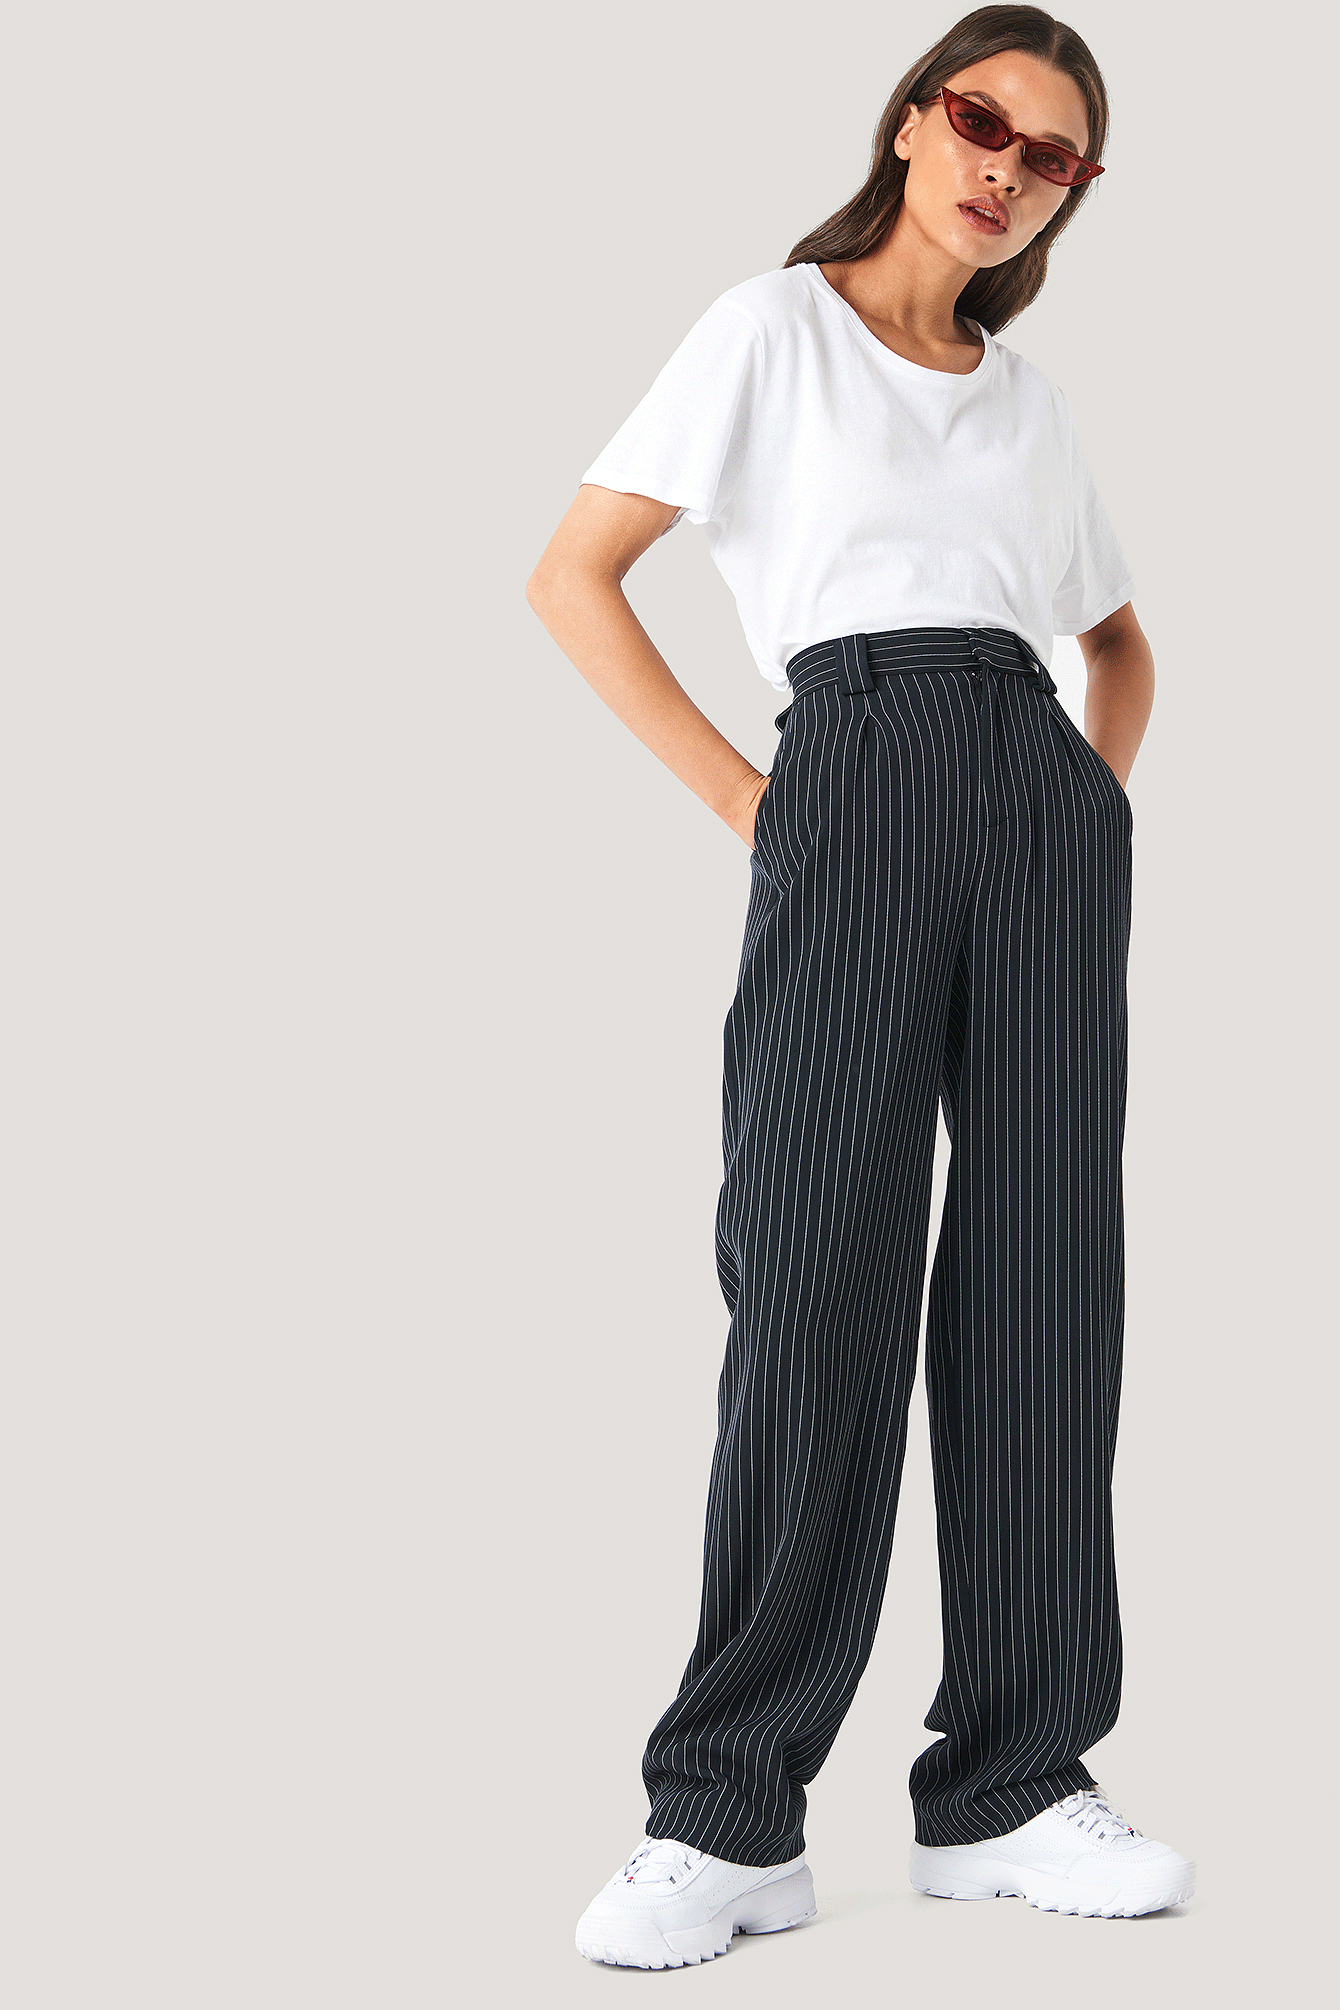 Buy Black Trousers  Pants for Women by Nakd Online  Ajiocom